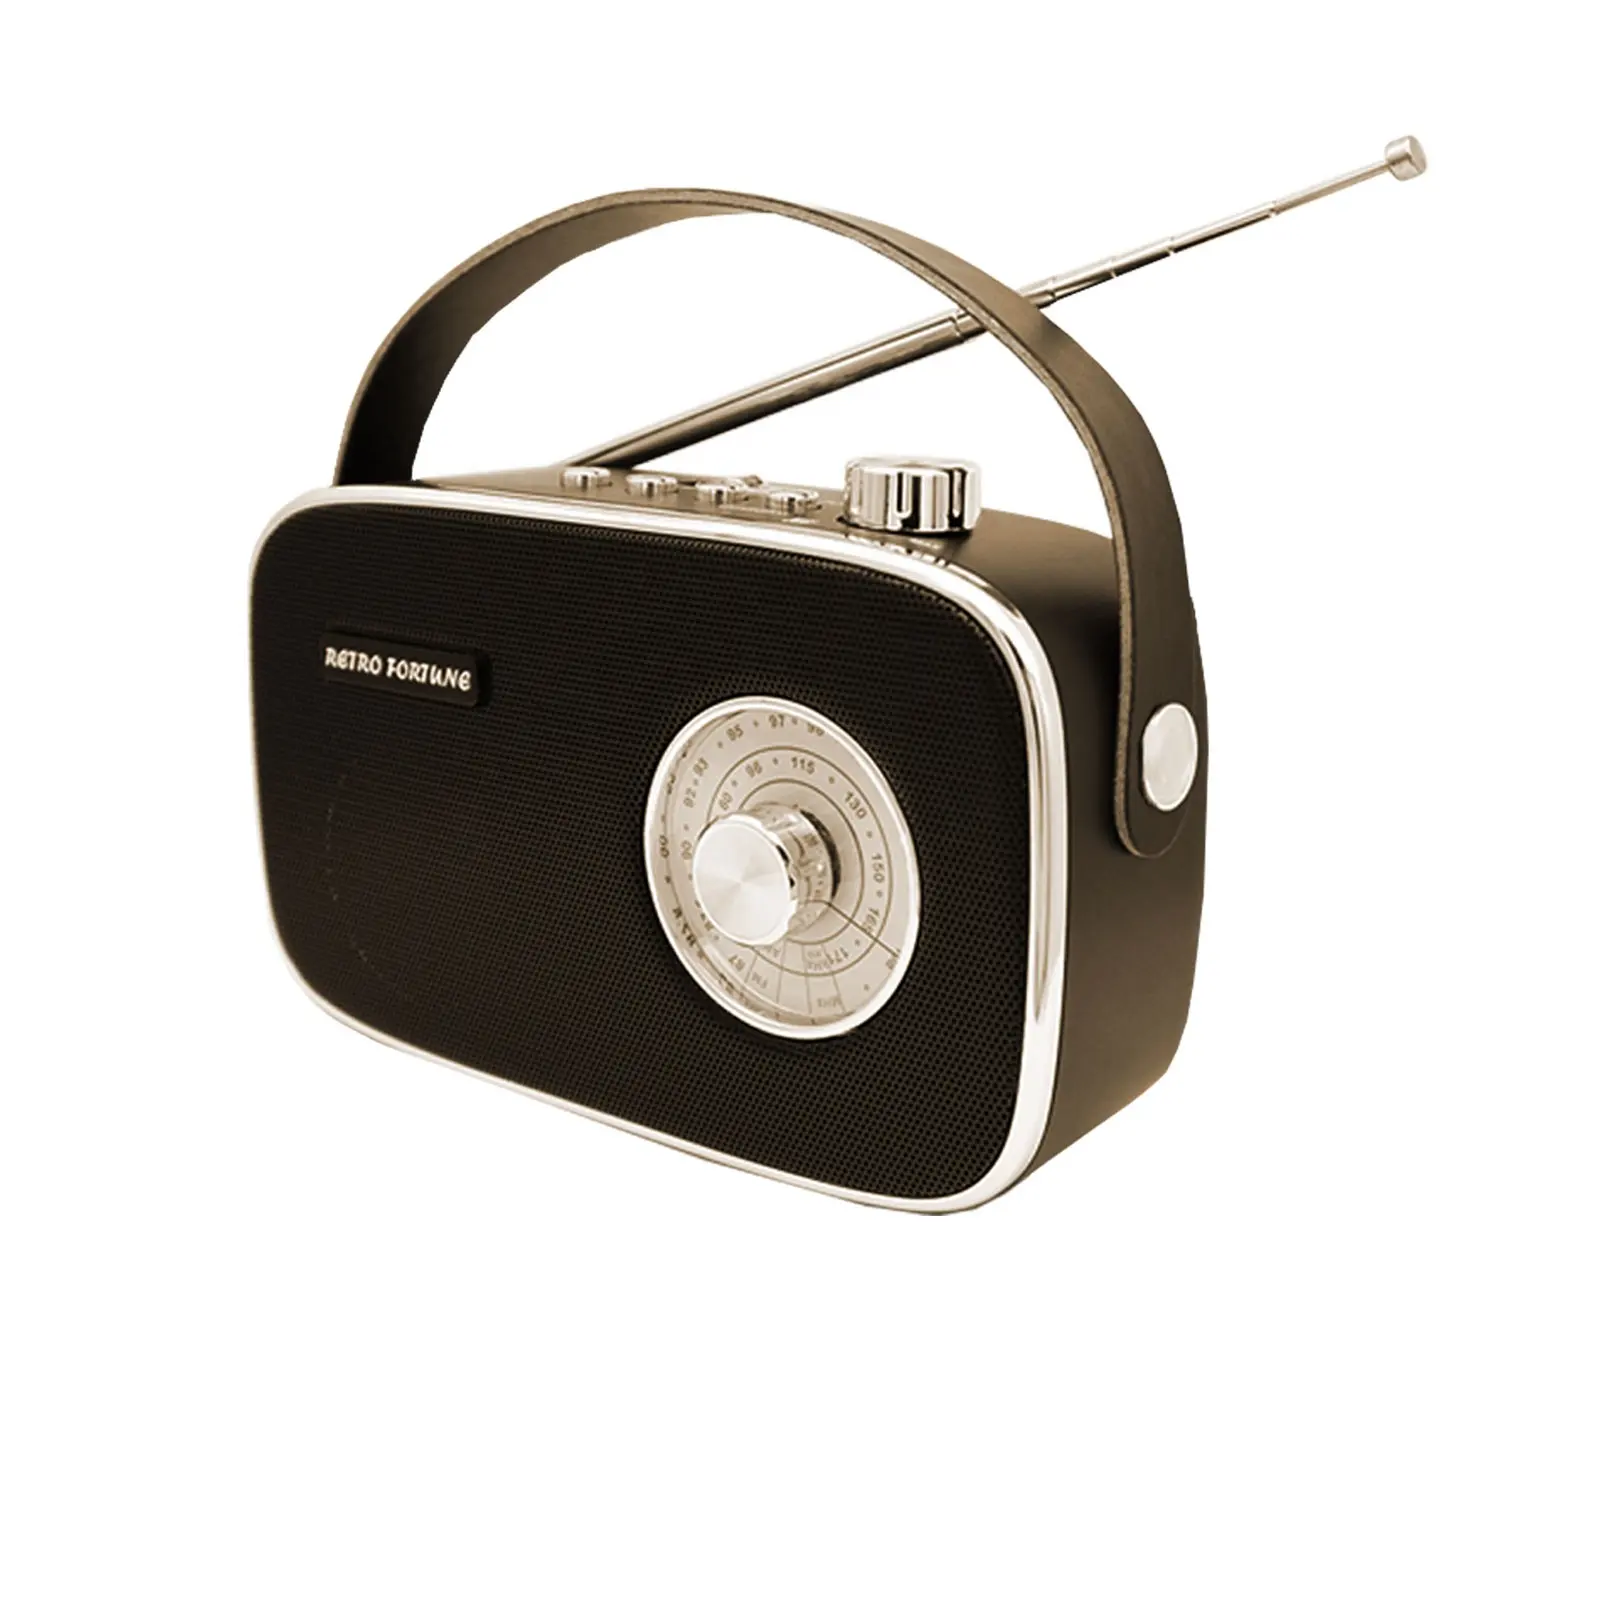 Taşınabilir yüksek hassasiyet güçlü USB/SD/TF/BT AM FM radyo alıcısı eski stil retro radyo vintage özel ev radyo